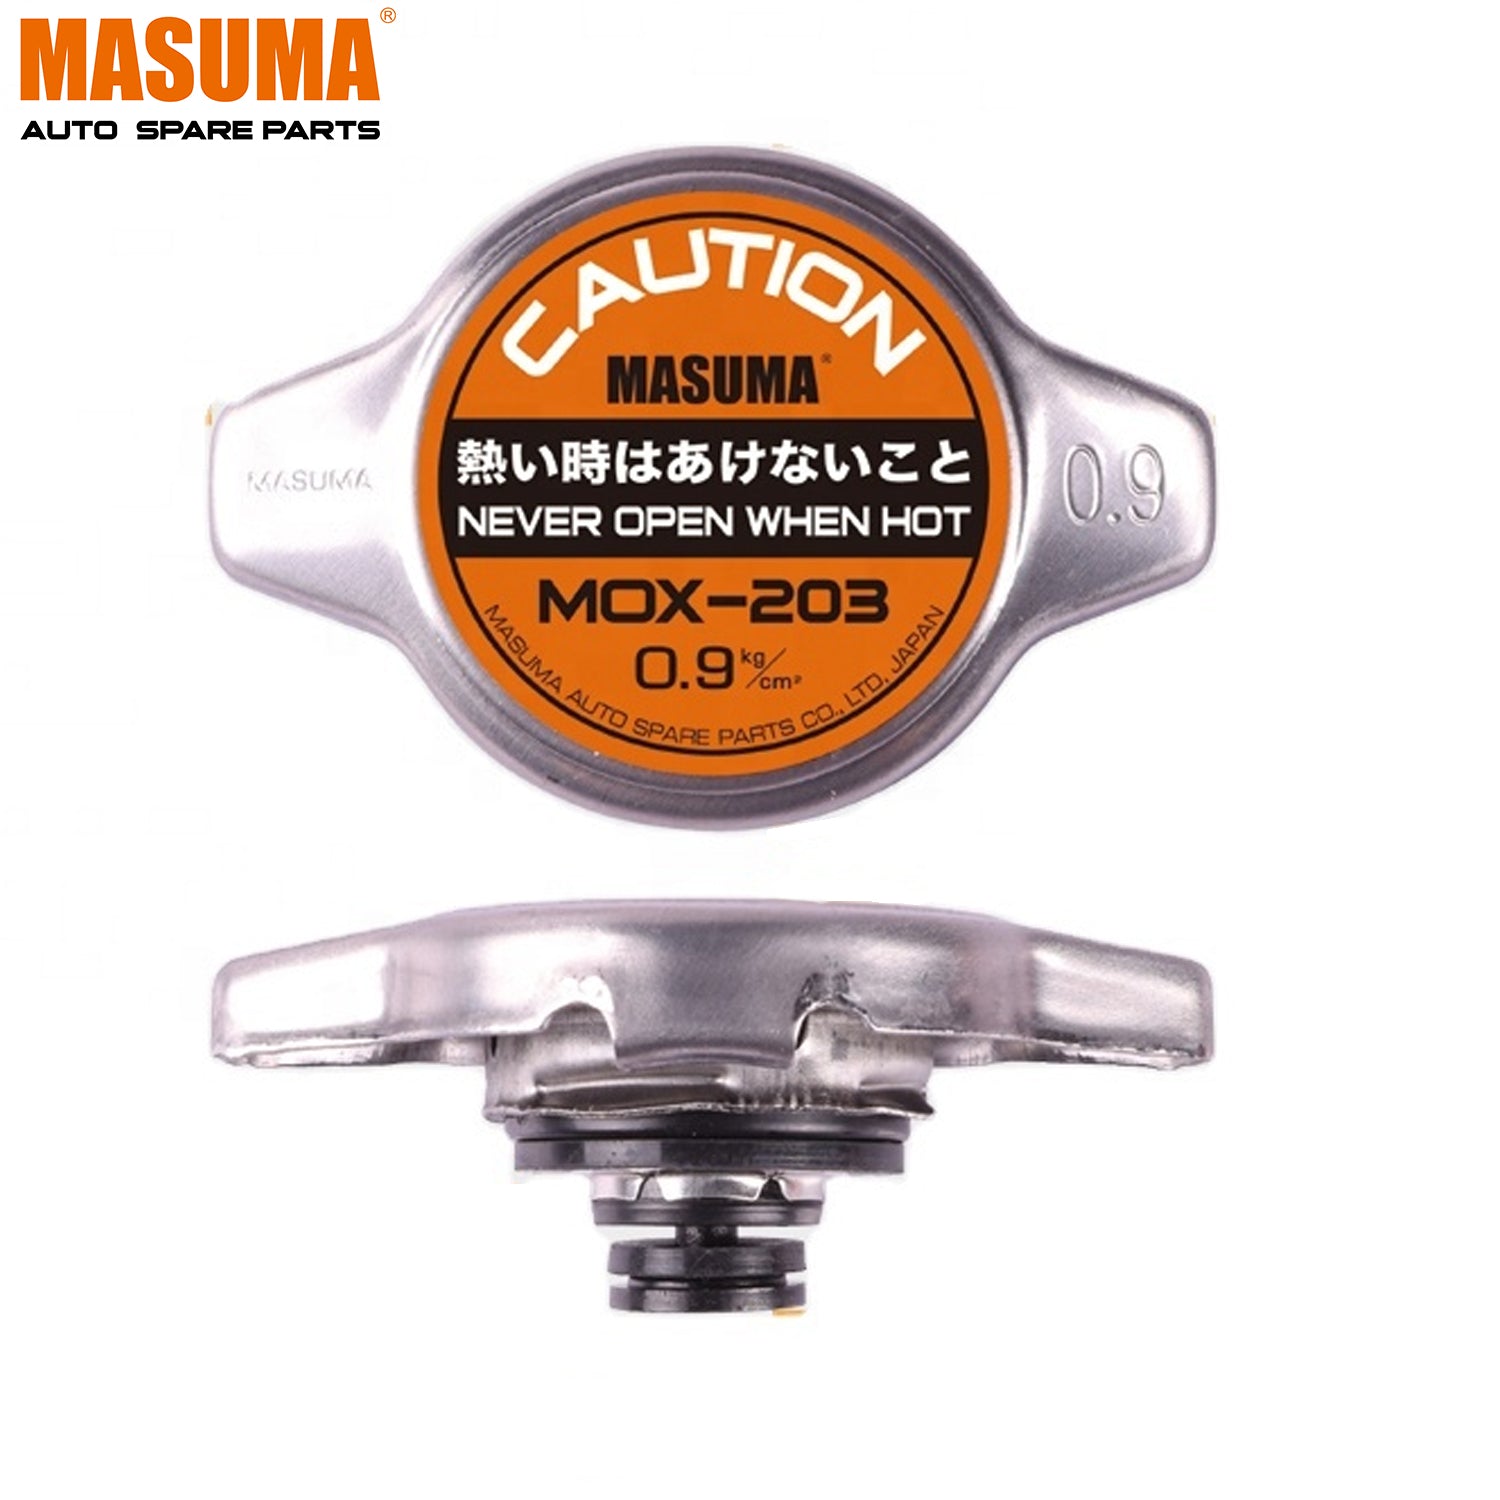 MOX-203 MASUMA temperature diesel engine radiator cap cover